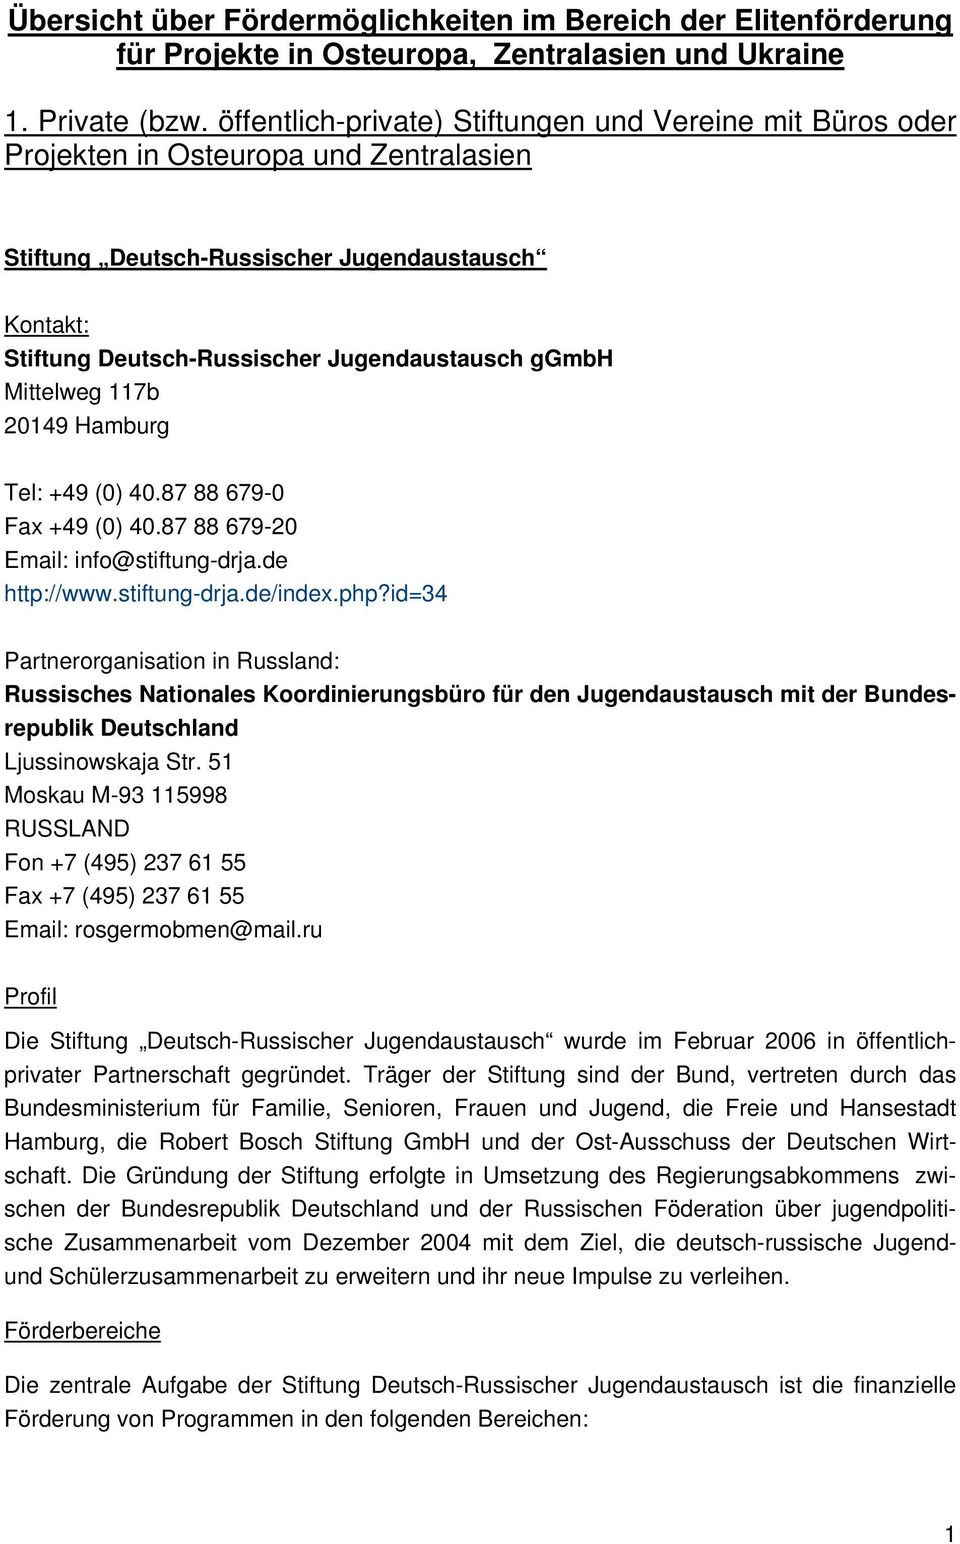 ggmbh Mittelweg 117b 20149 Hamburg Tel: +49 (0) 40.87 88 679-0 Fax +49 (0) 40.87 88 679-20 Email: info@stiftung-drja.de http://www.stiftung-drja.de/index.php?